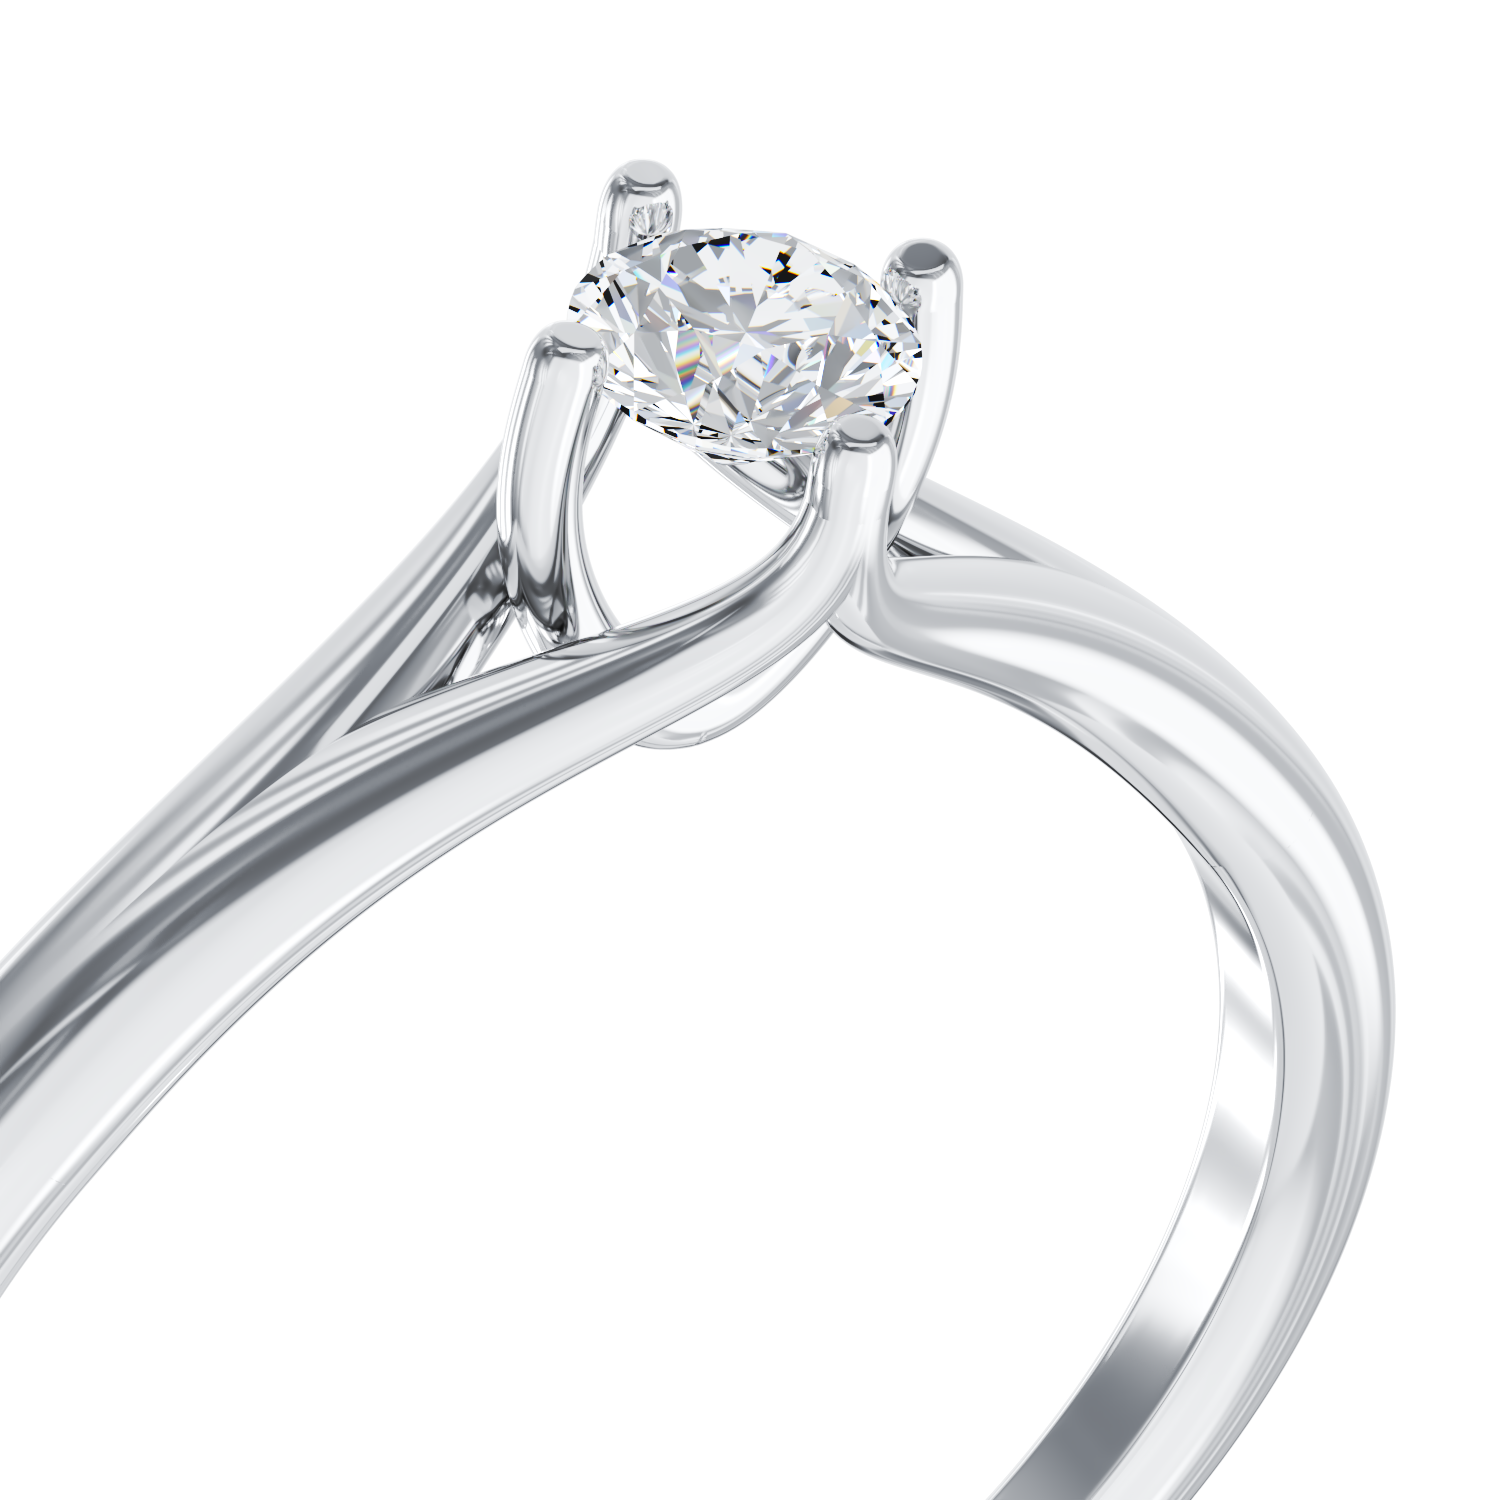 Poze Inel de logodna din aur alb de 18K cu un diamant solitaire de 0.1ct